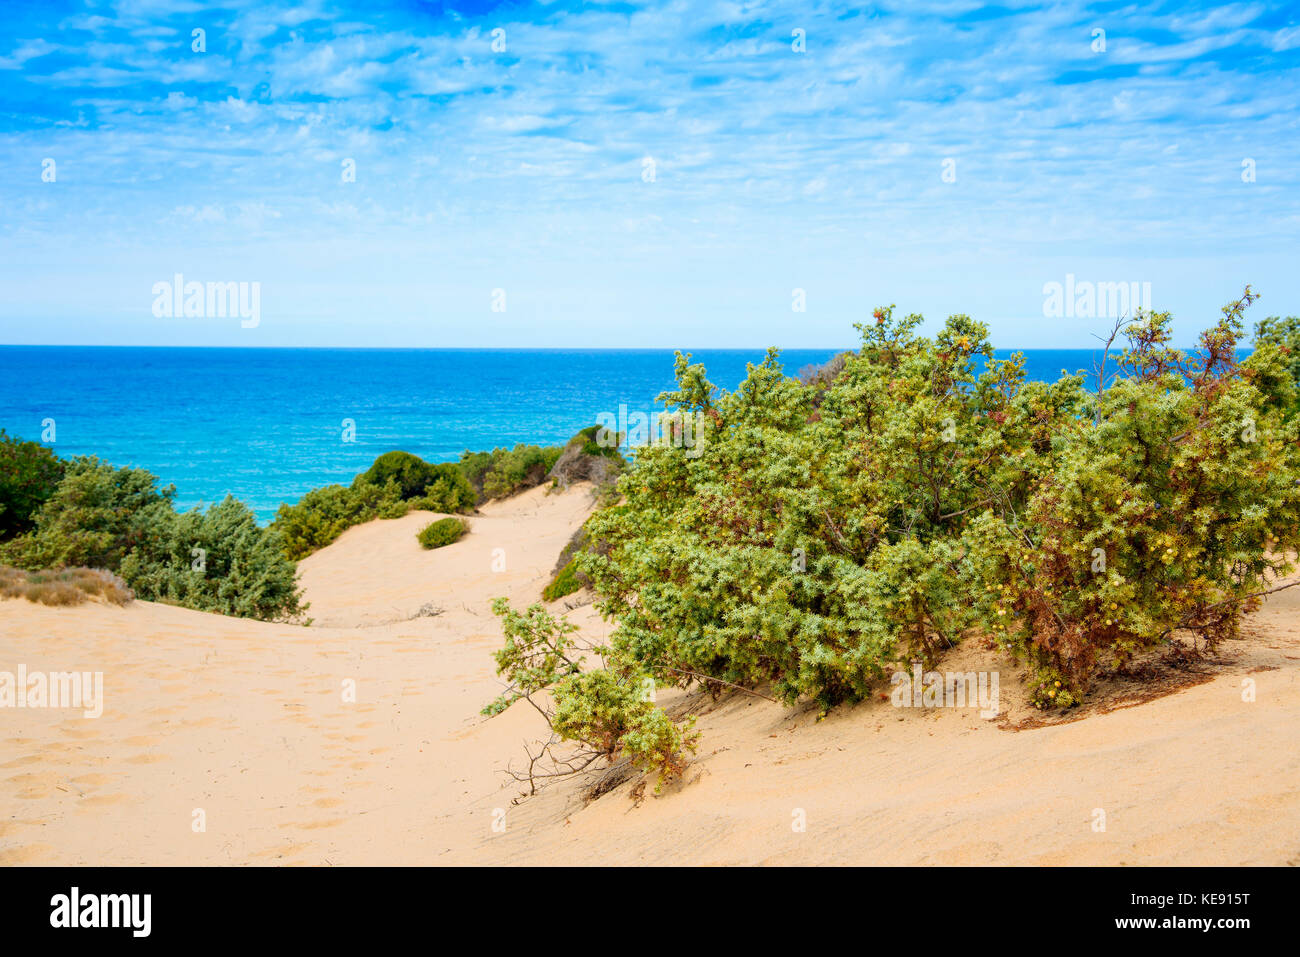 Ein Blick auf die Dünen von Piscinas in Sardinien, Italien, mit dem Mittelmeer im Hintergrund Stockfoto